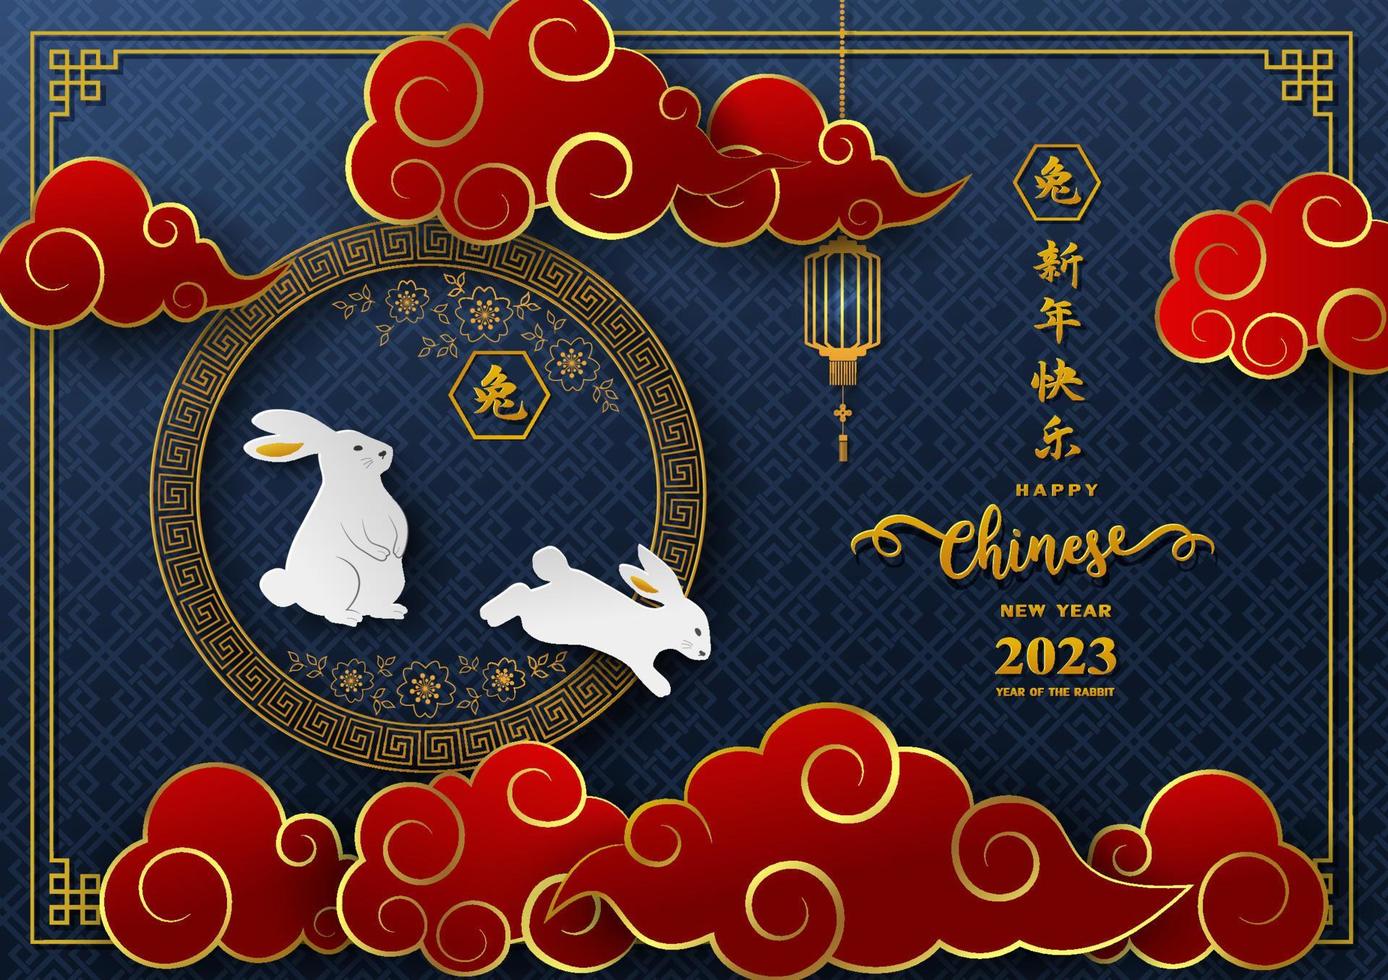 frohes chinesisches neujahr 2023, sternzeichen für das jahr des kaninchens mit asiatischem element auf dunkelblauem hintergrund vektor